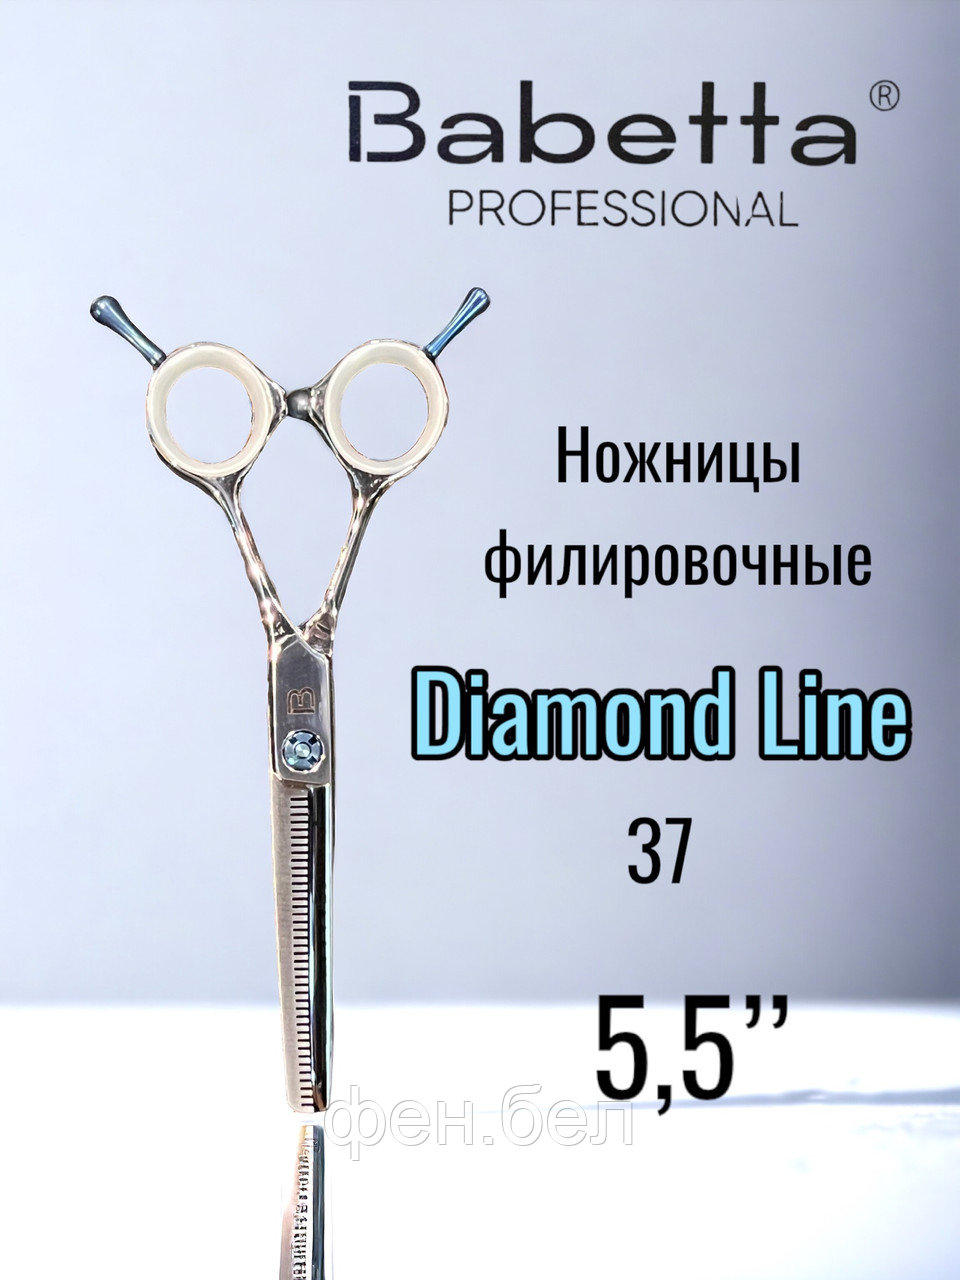 Ножницы парикмахерские Babetta 5 класс филировочные размер 5,5 Diamond Line